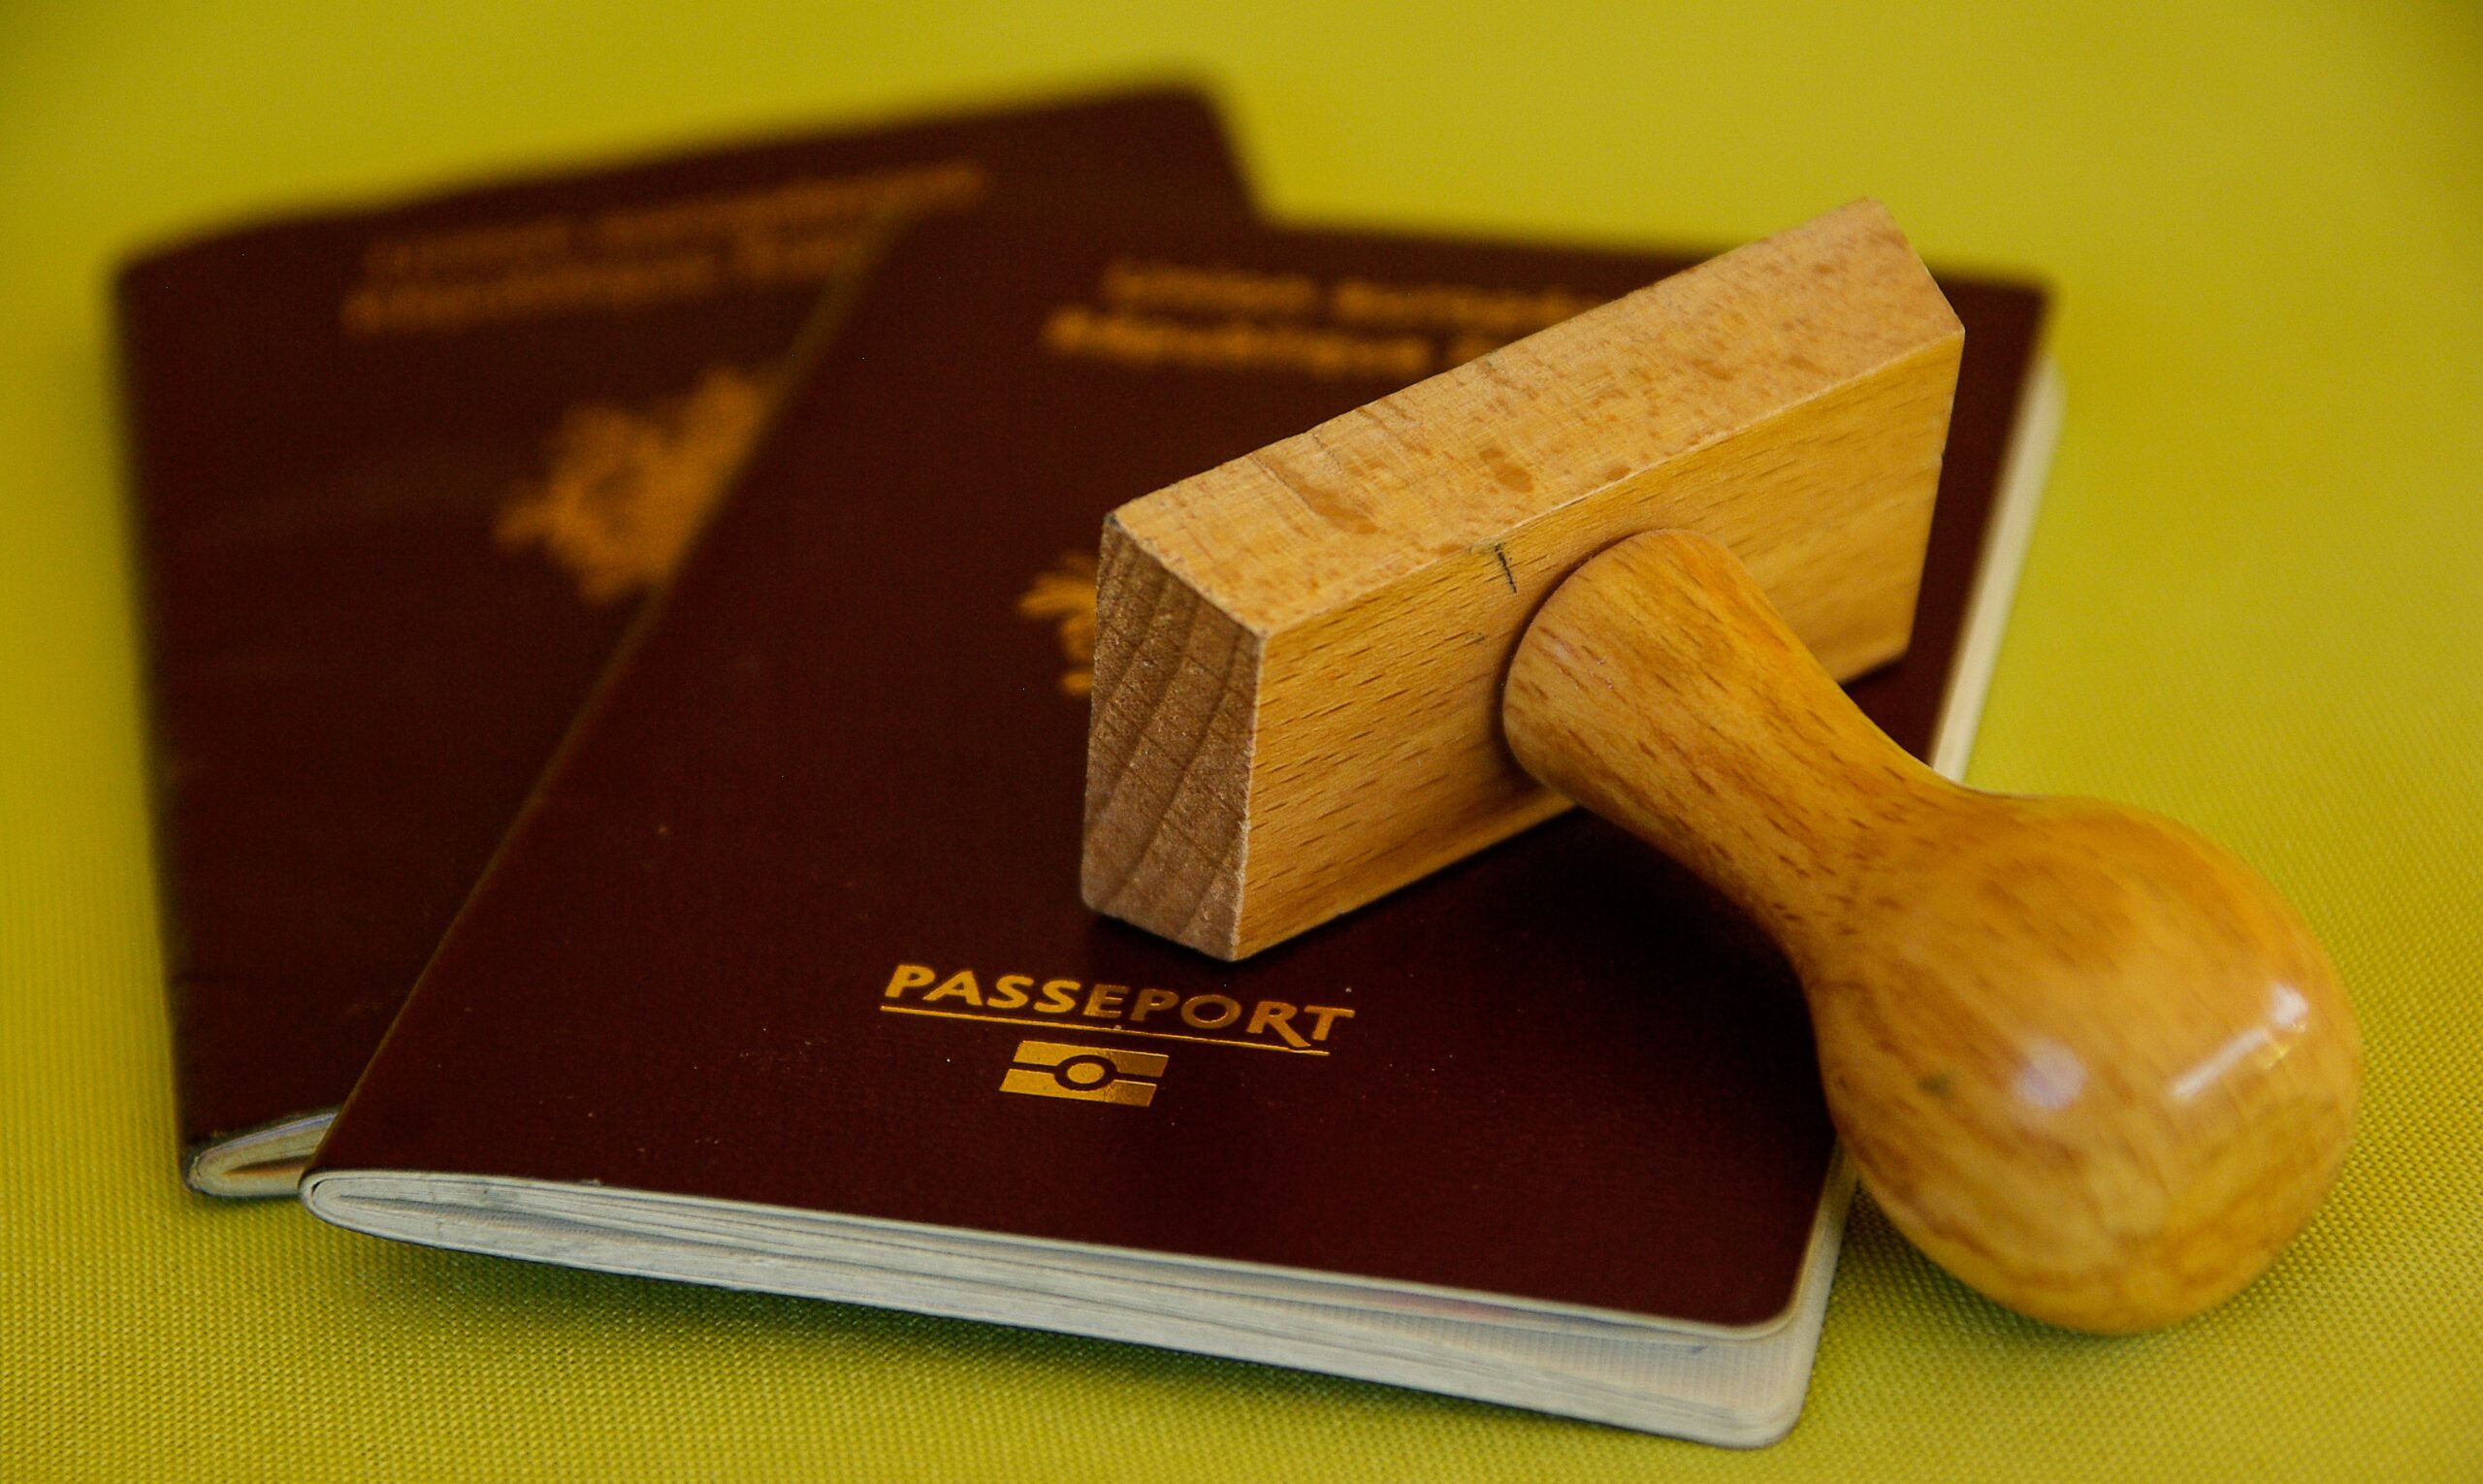 Visto americano: Estados Unidos suspende a etapa da entrevista do processo de emissão de alguns tipos de visto. Confira!